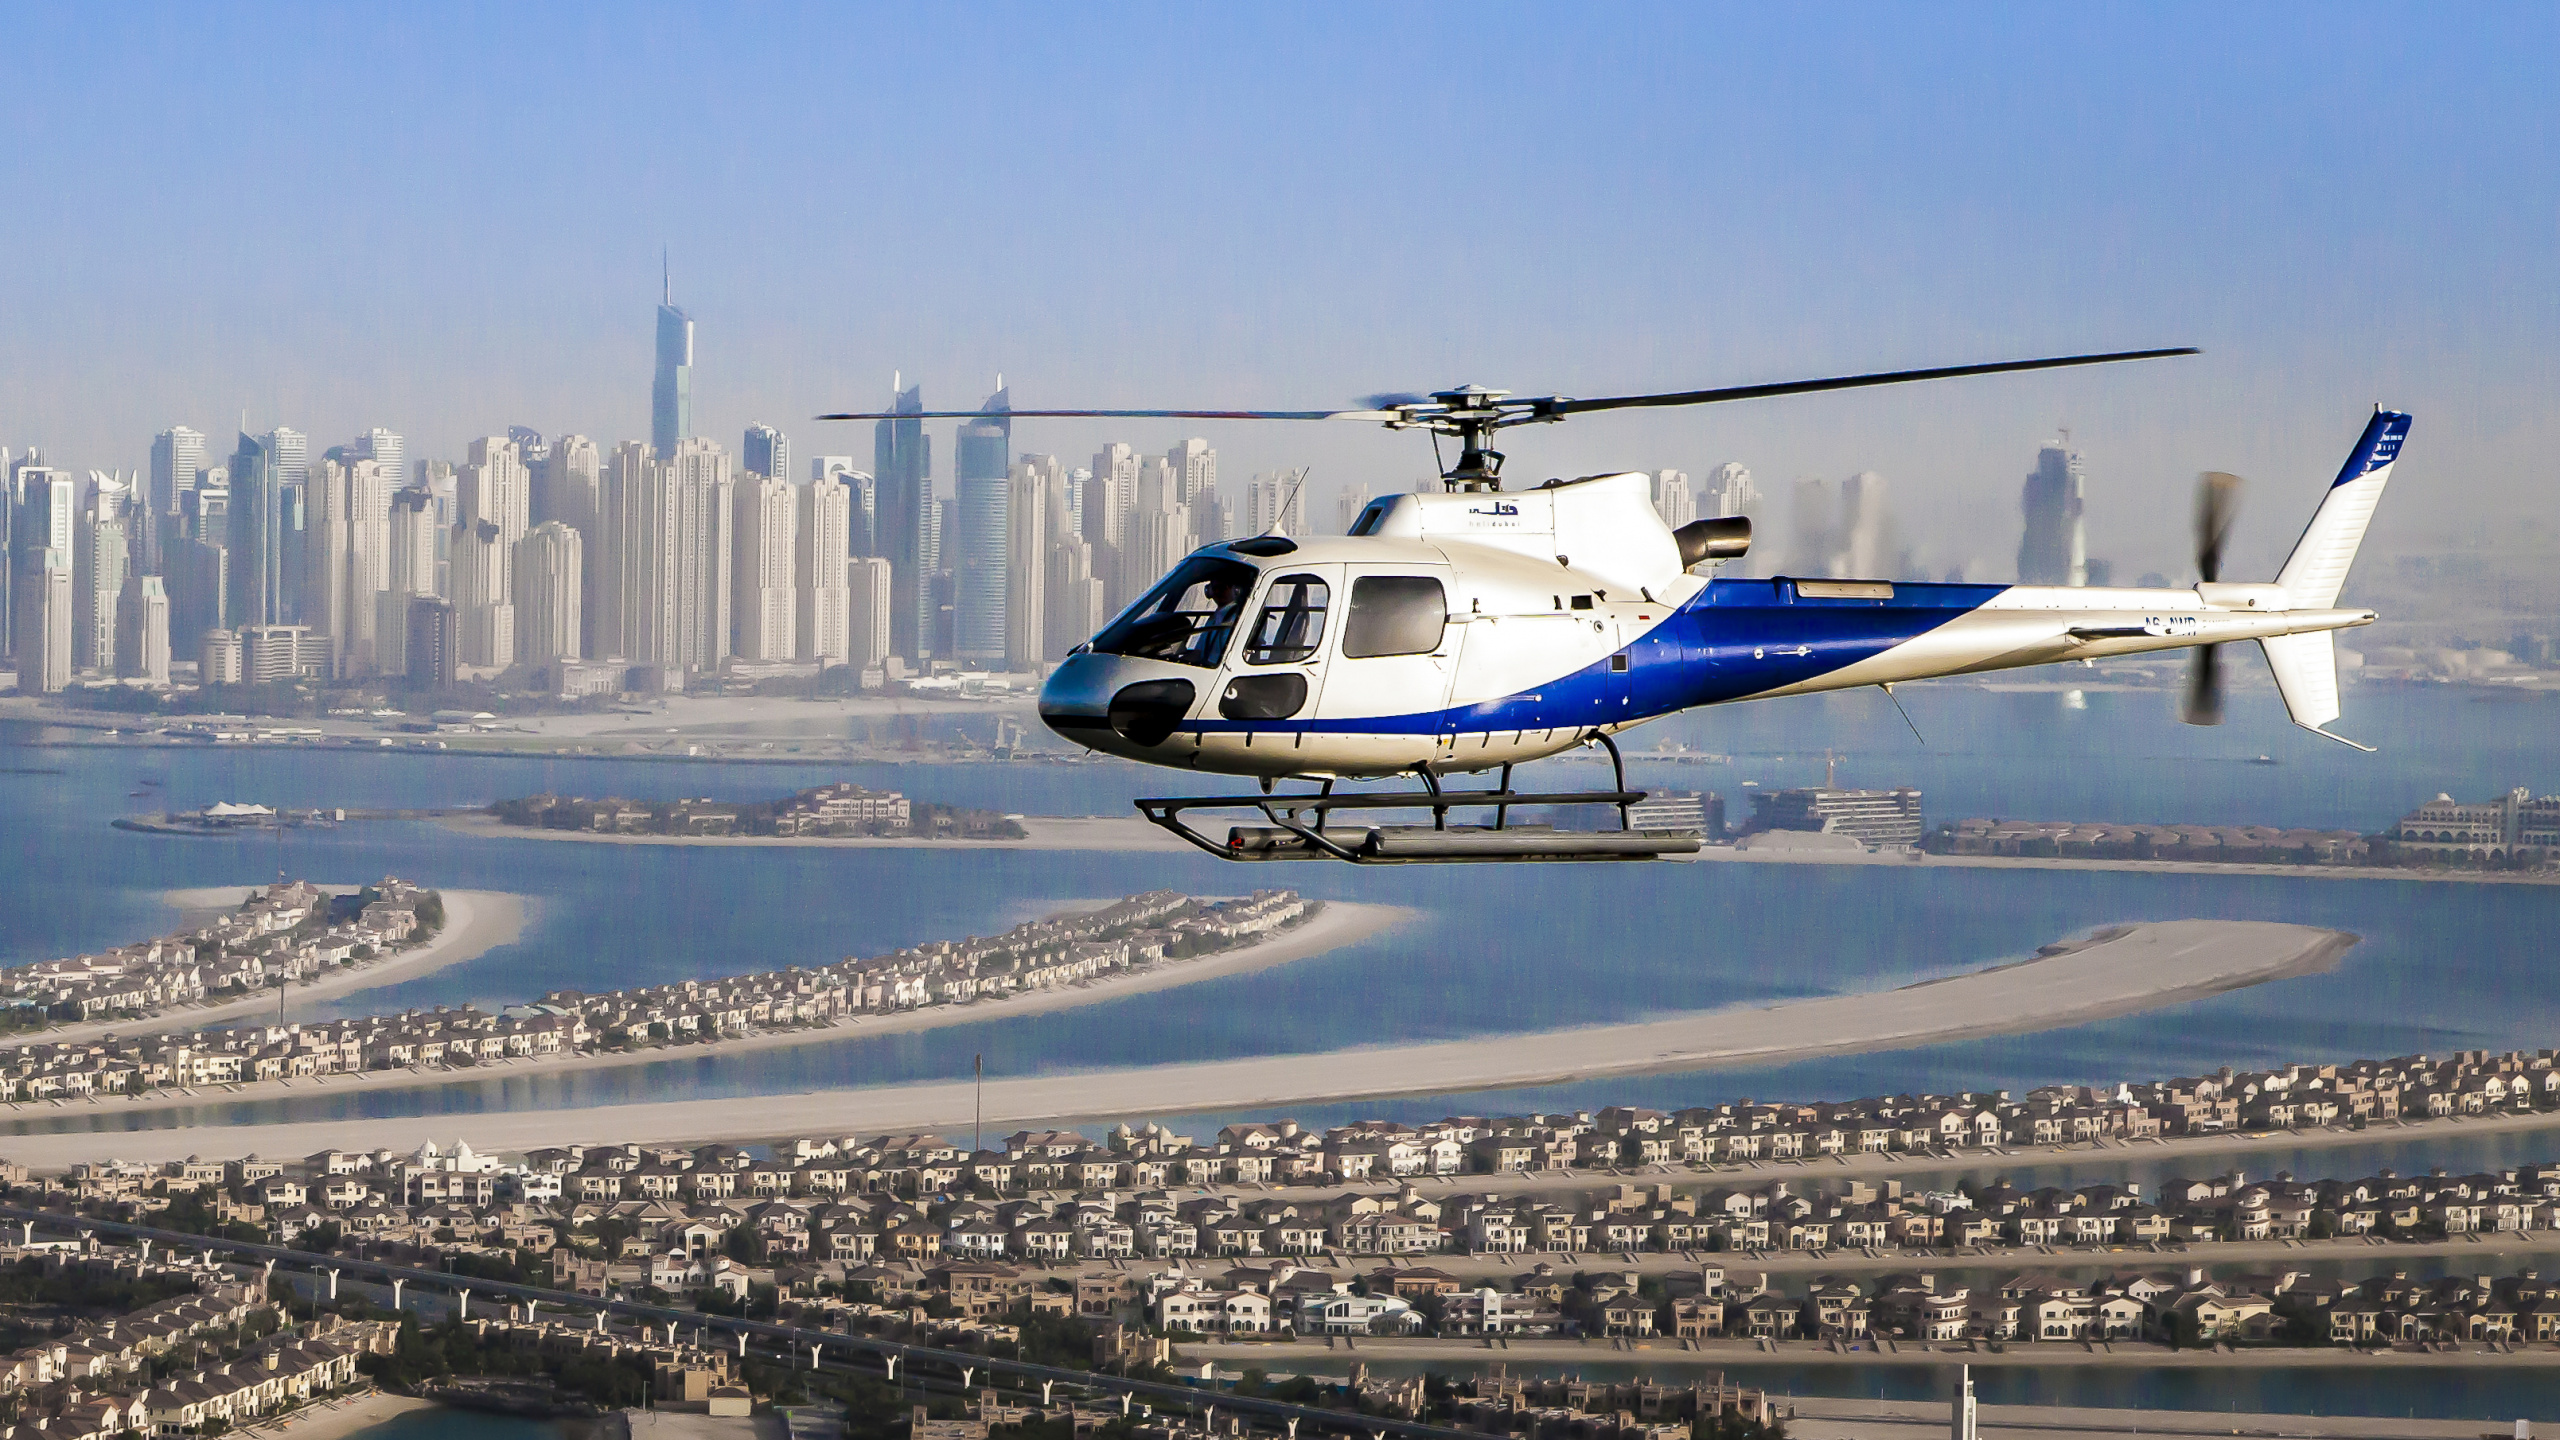 航班, 直升机, 旋翼飞机, 城市, 大都会 壁纸 2560x1440 允许